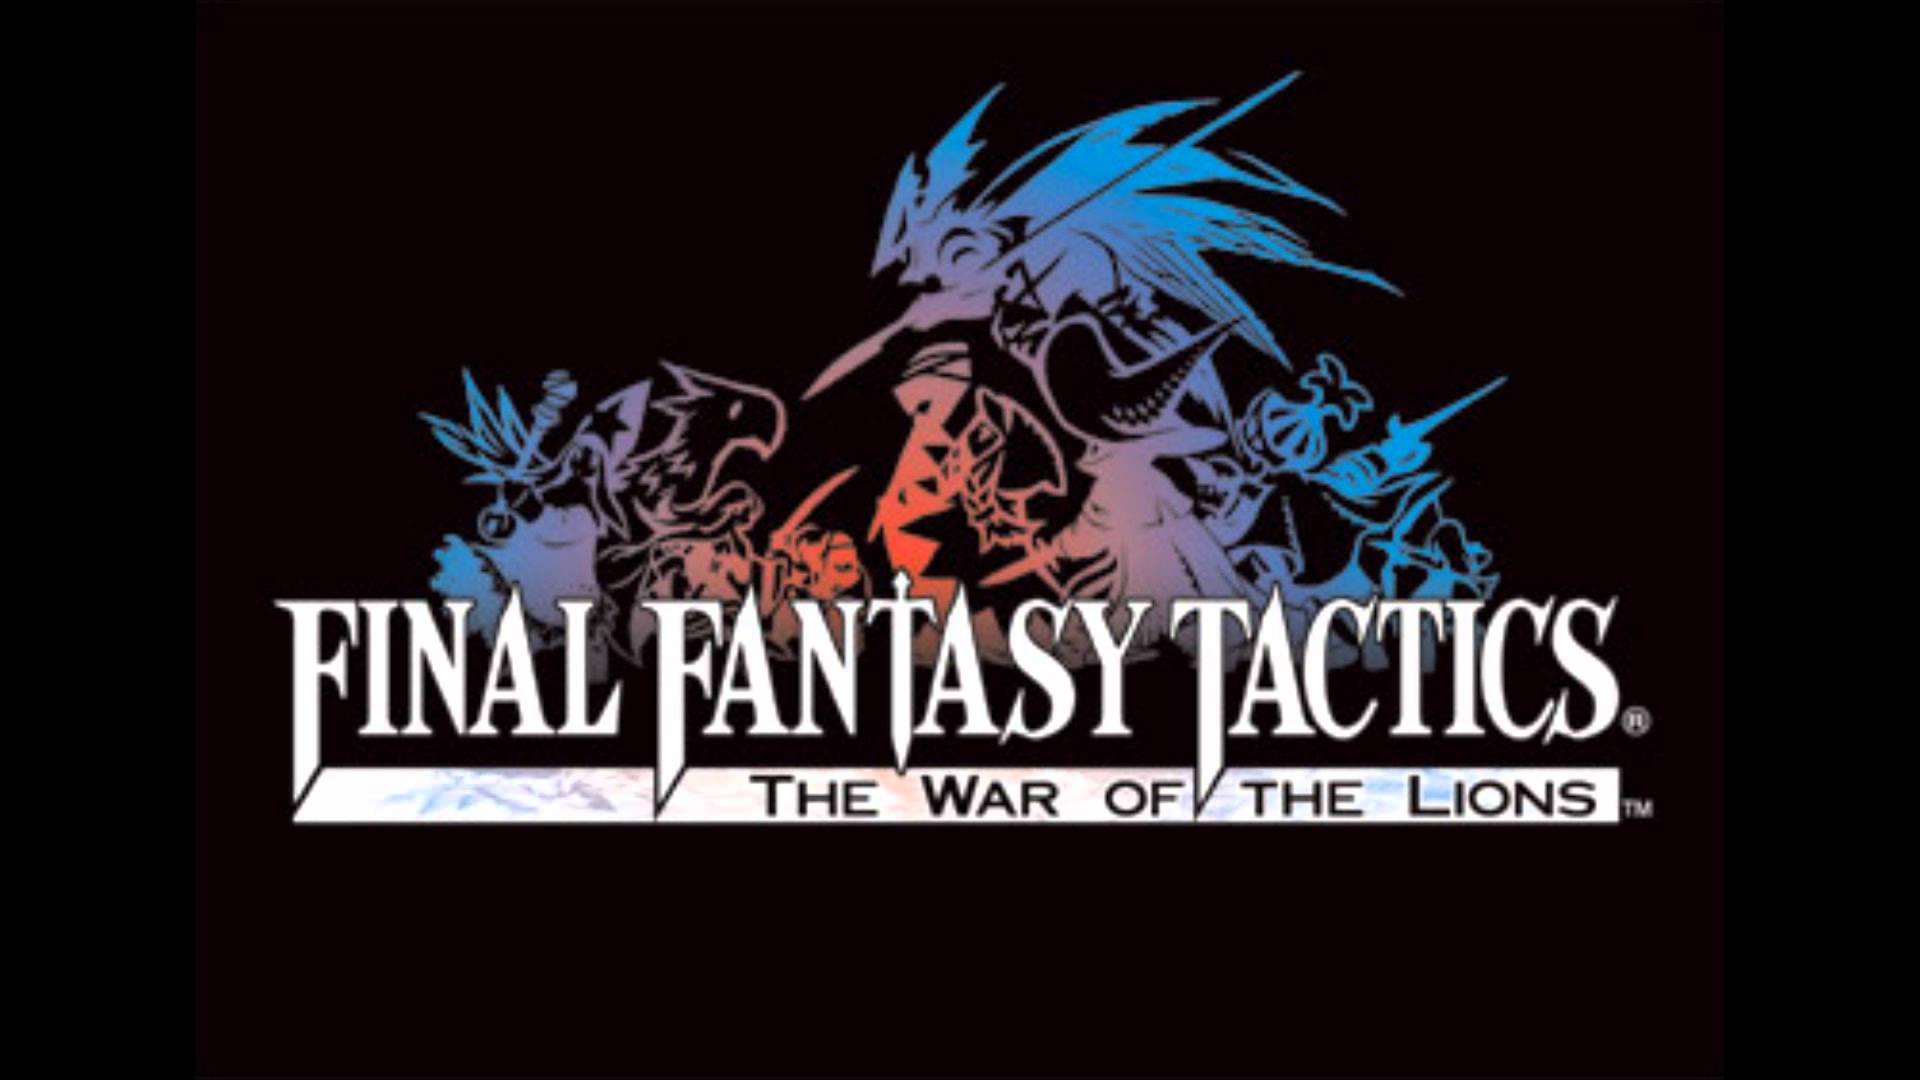 Final Fantasy Tactics Wallpaper , Download 4K Wallpaper For Free